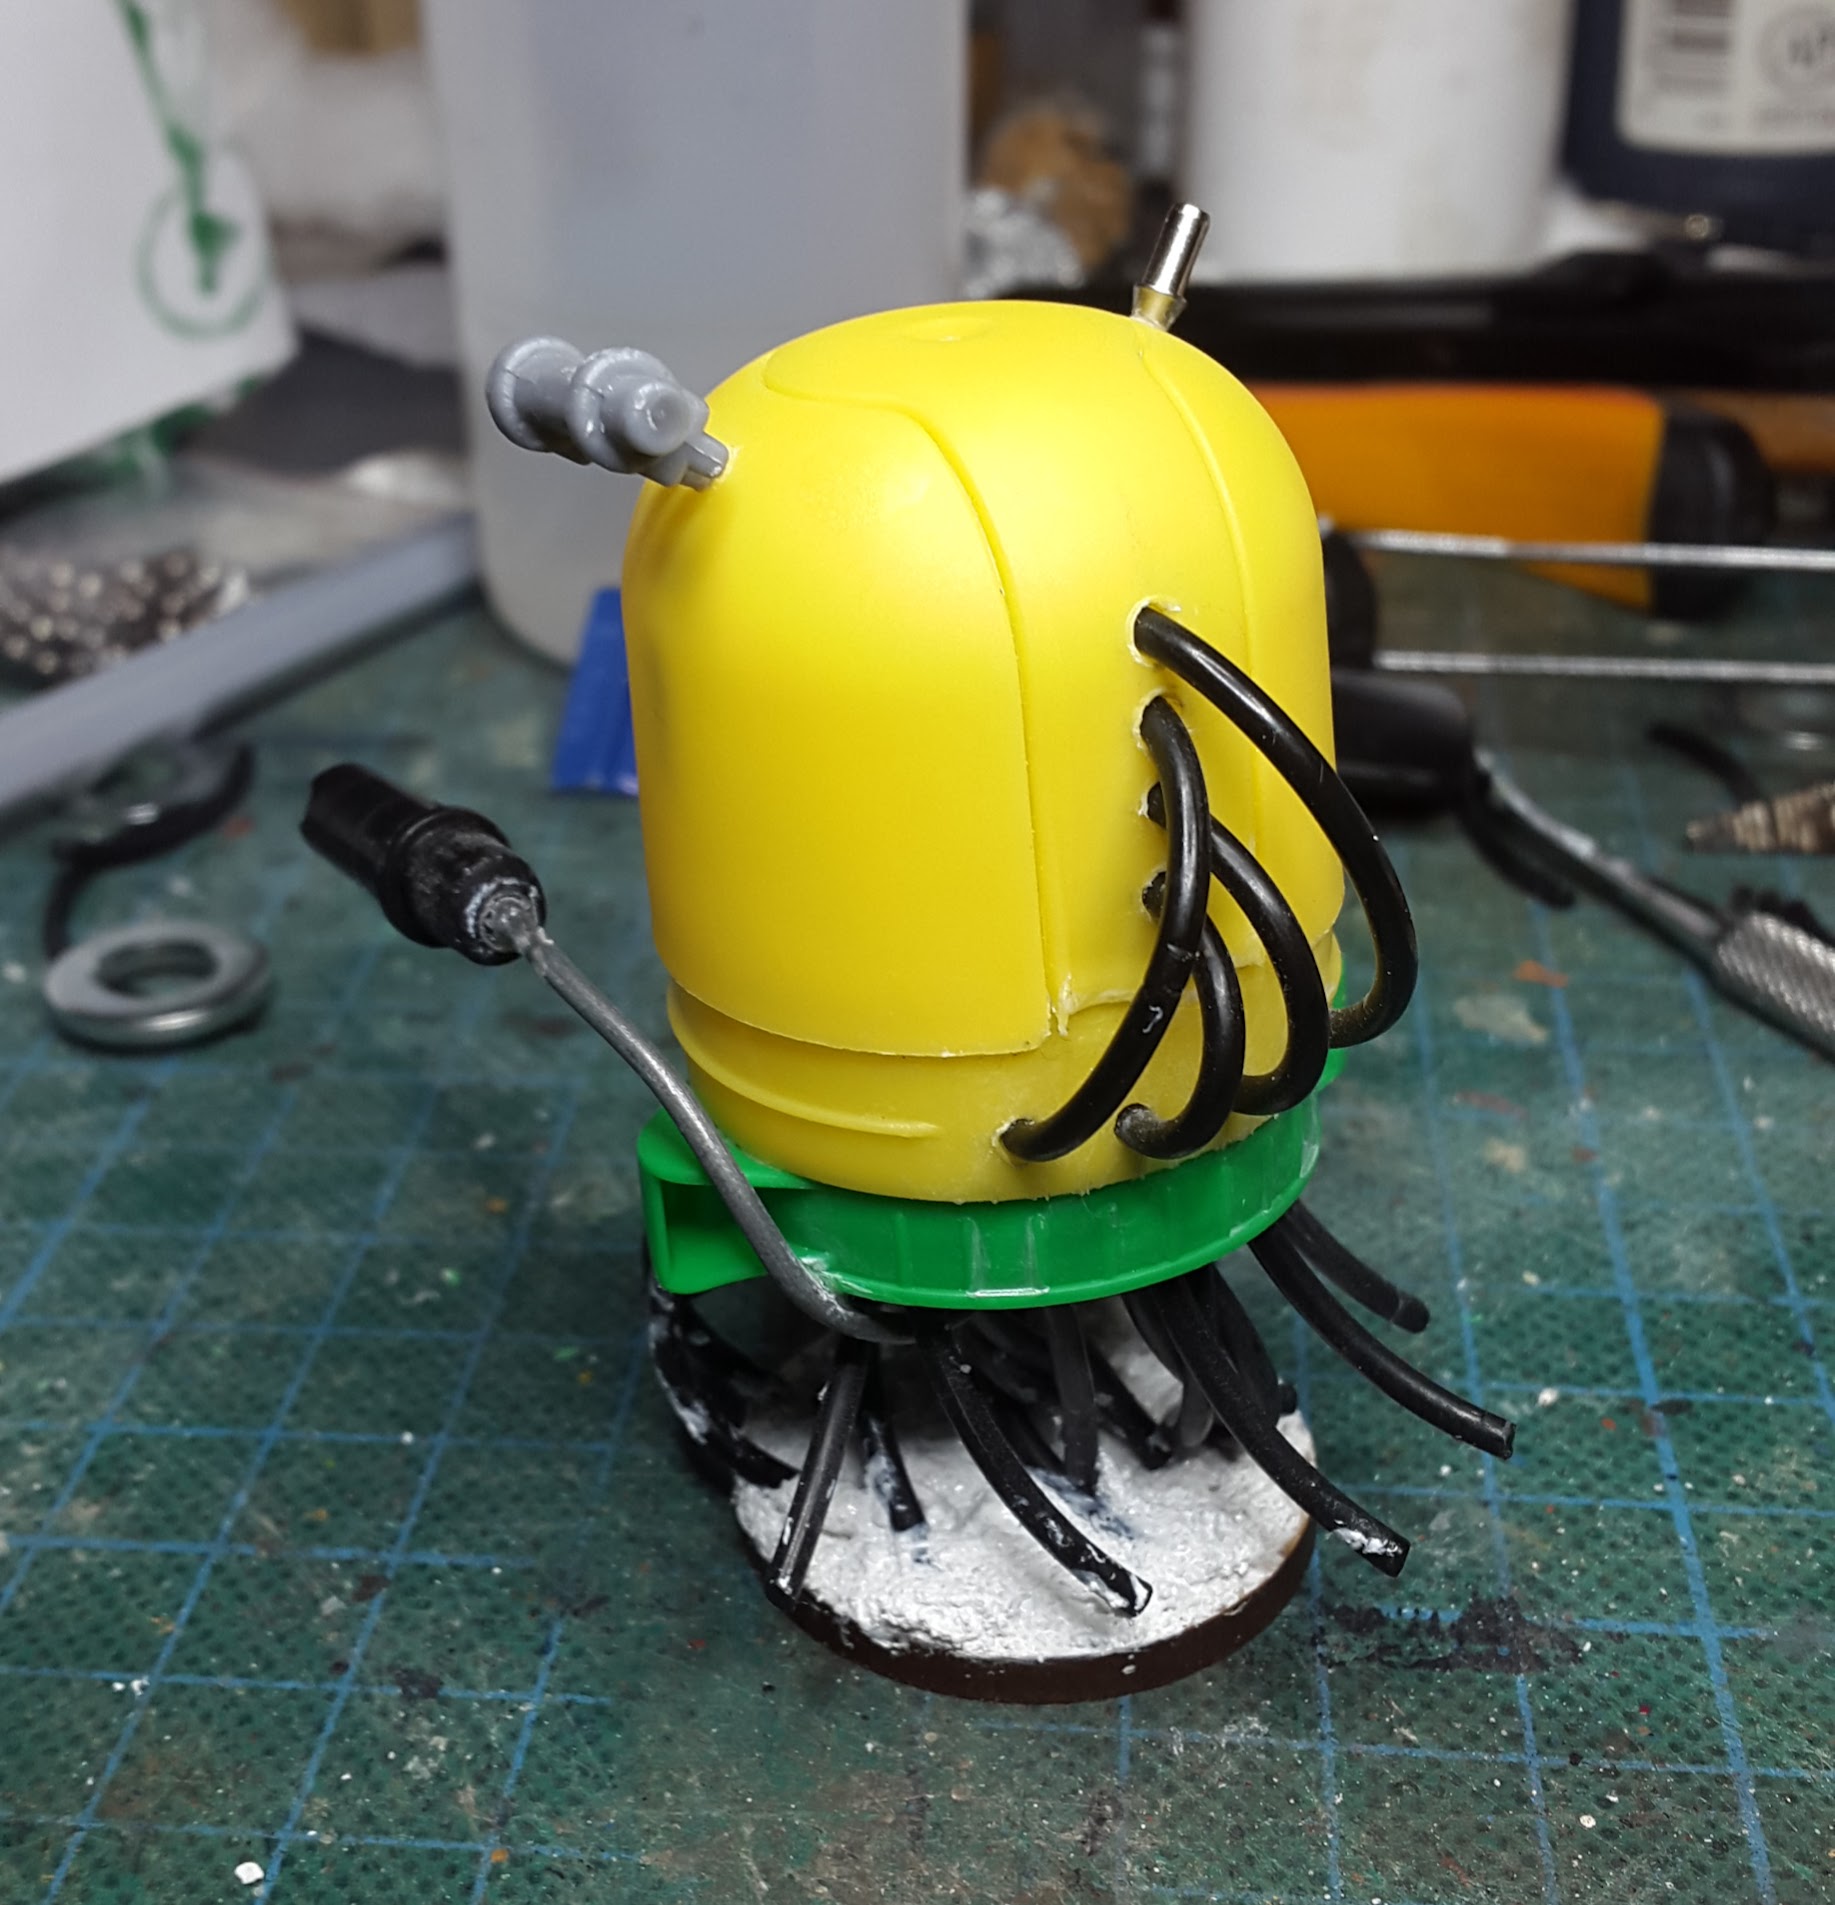 Scratch built toy robot : r/Scratchbuild